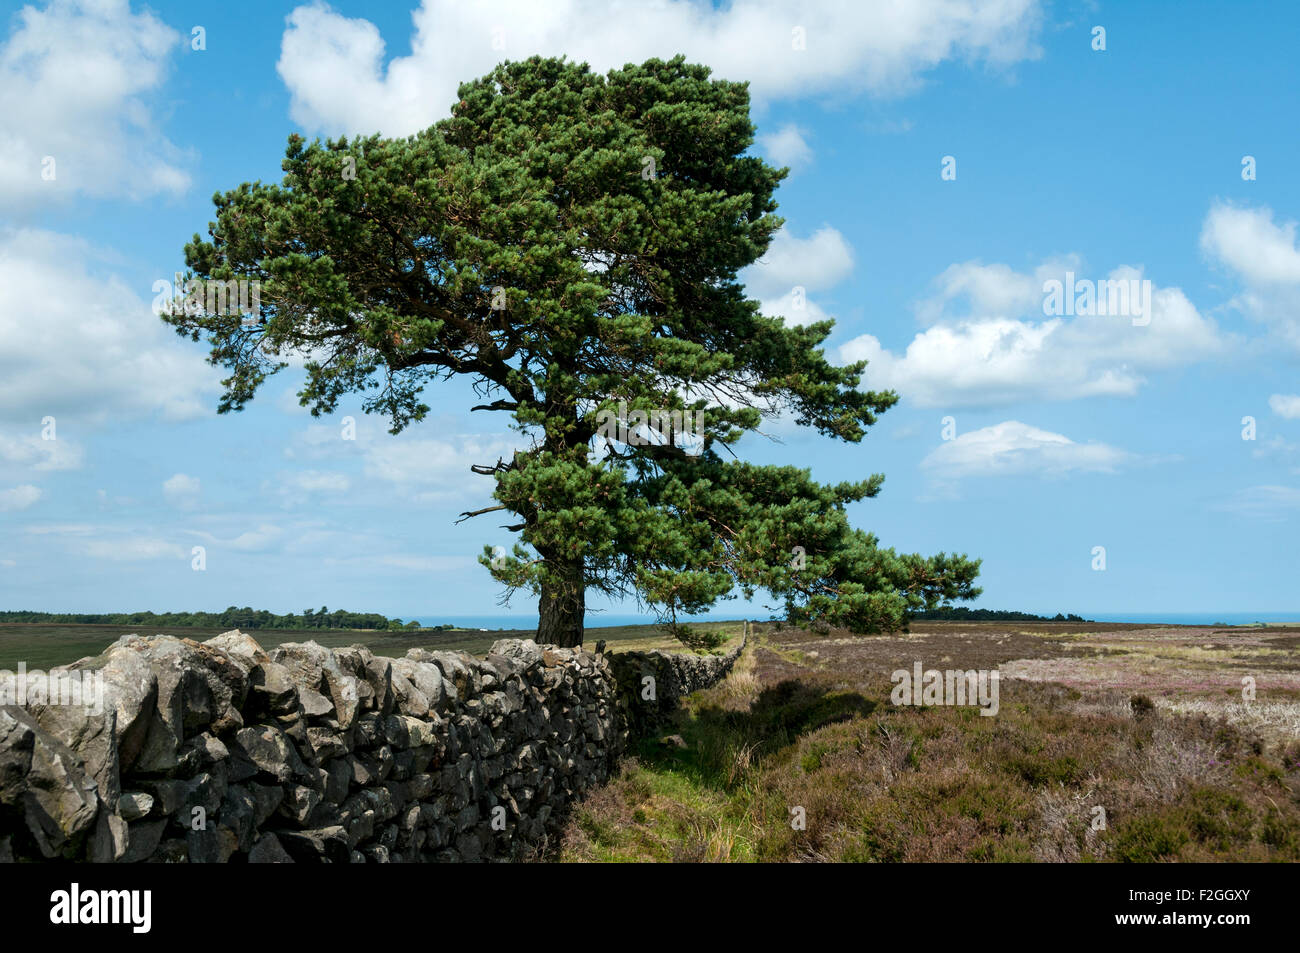 Trockenmauern Mauer und Baum, schießen Haus Rigg, Raketenstarts Moor, North Yorkshire Moors, Yorkshire, England, UK Stockfoto